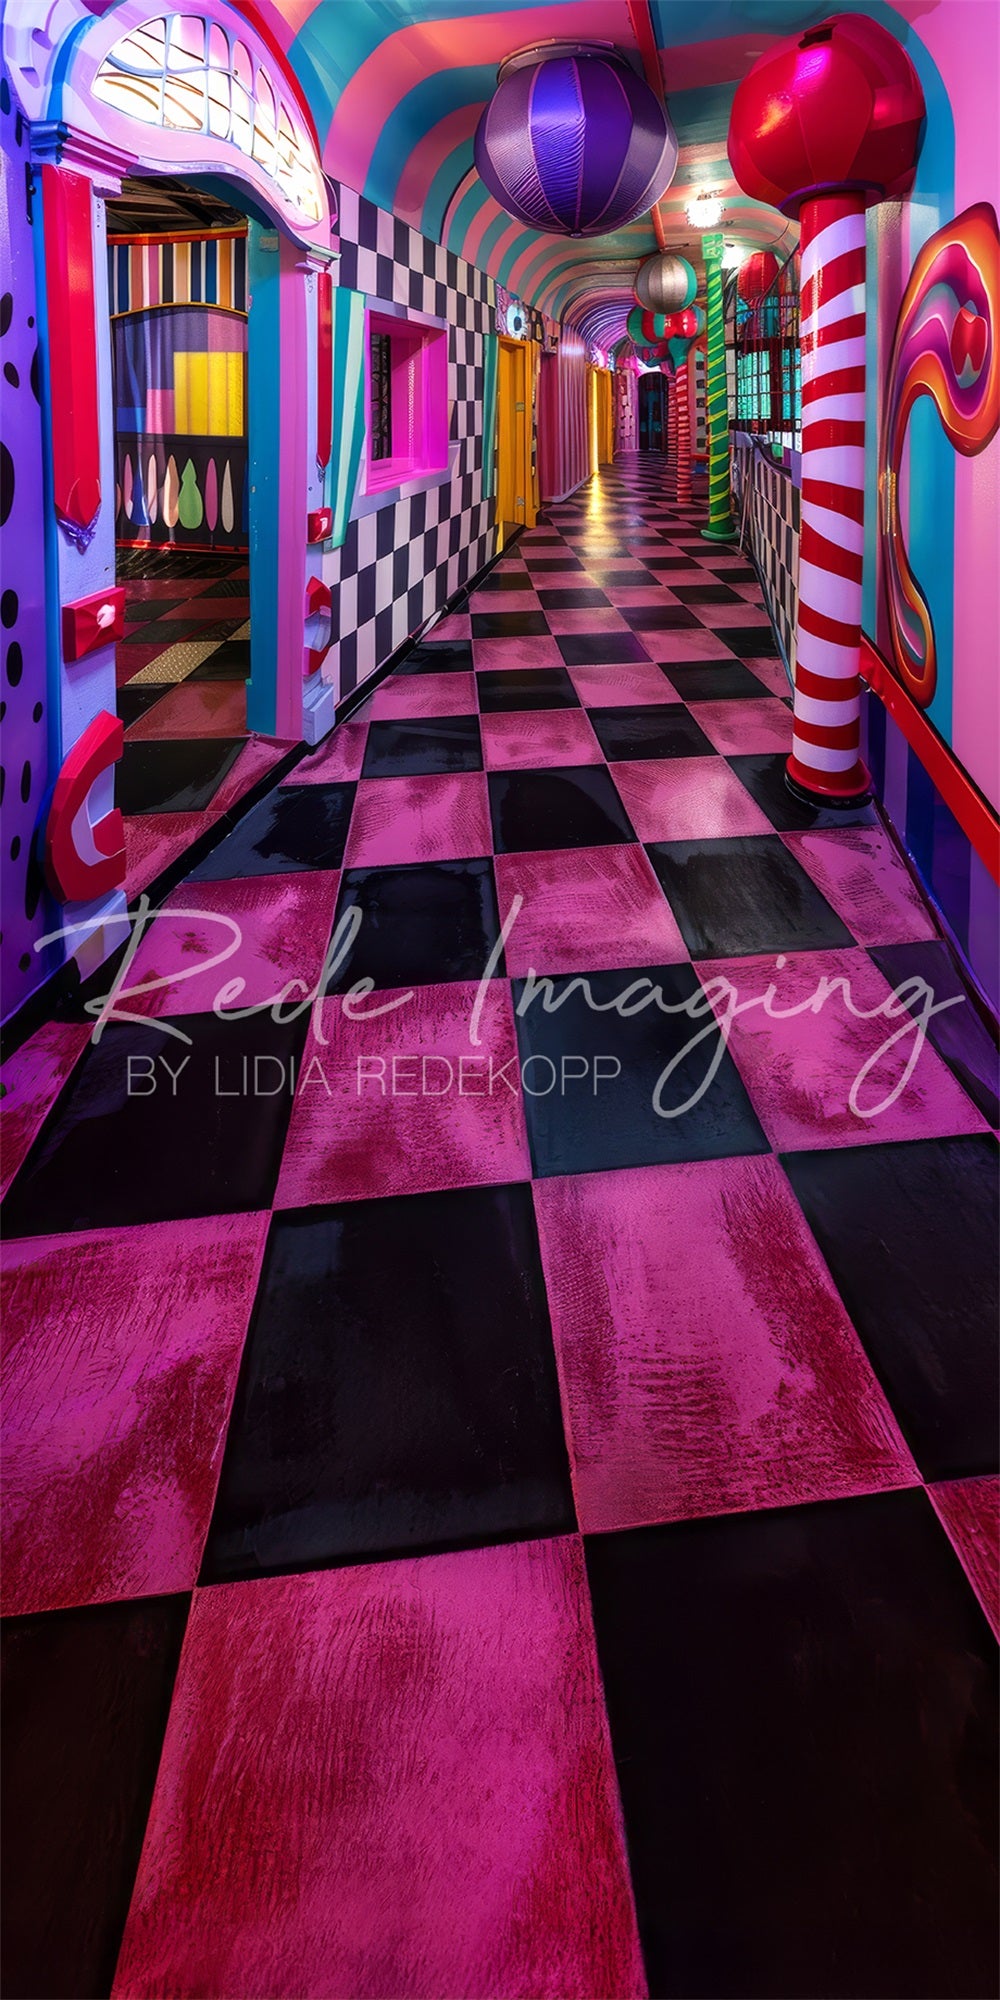 Scenografia di Lidia Redekopp per un colorato corridoio di un moderno Luna Park dell'arte contemporanea